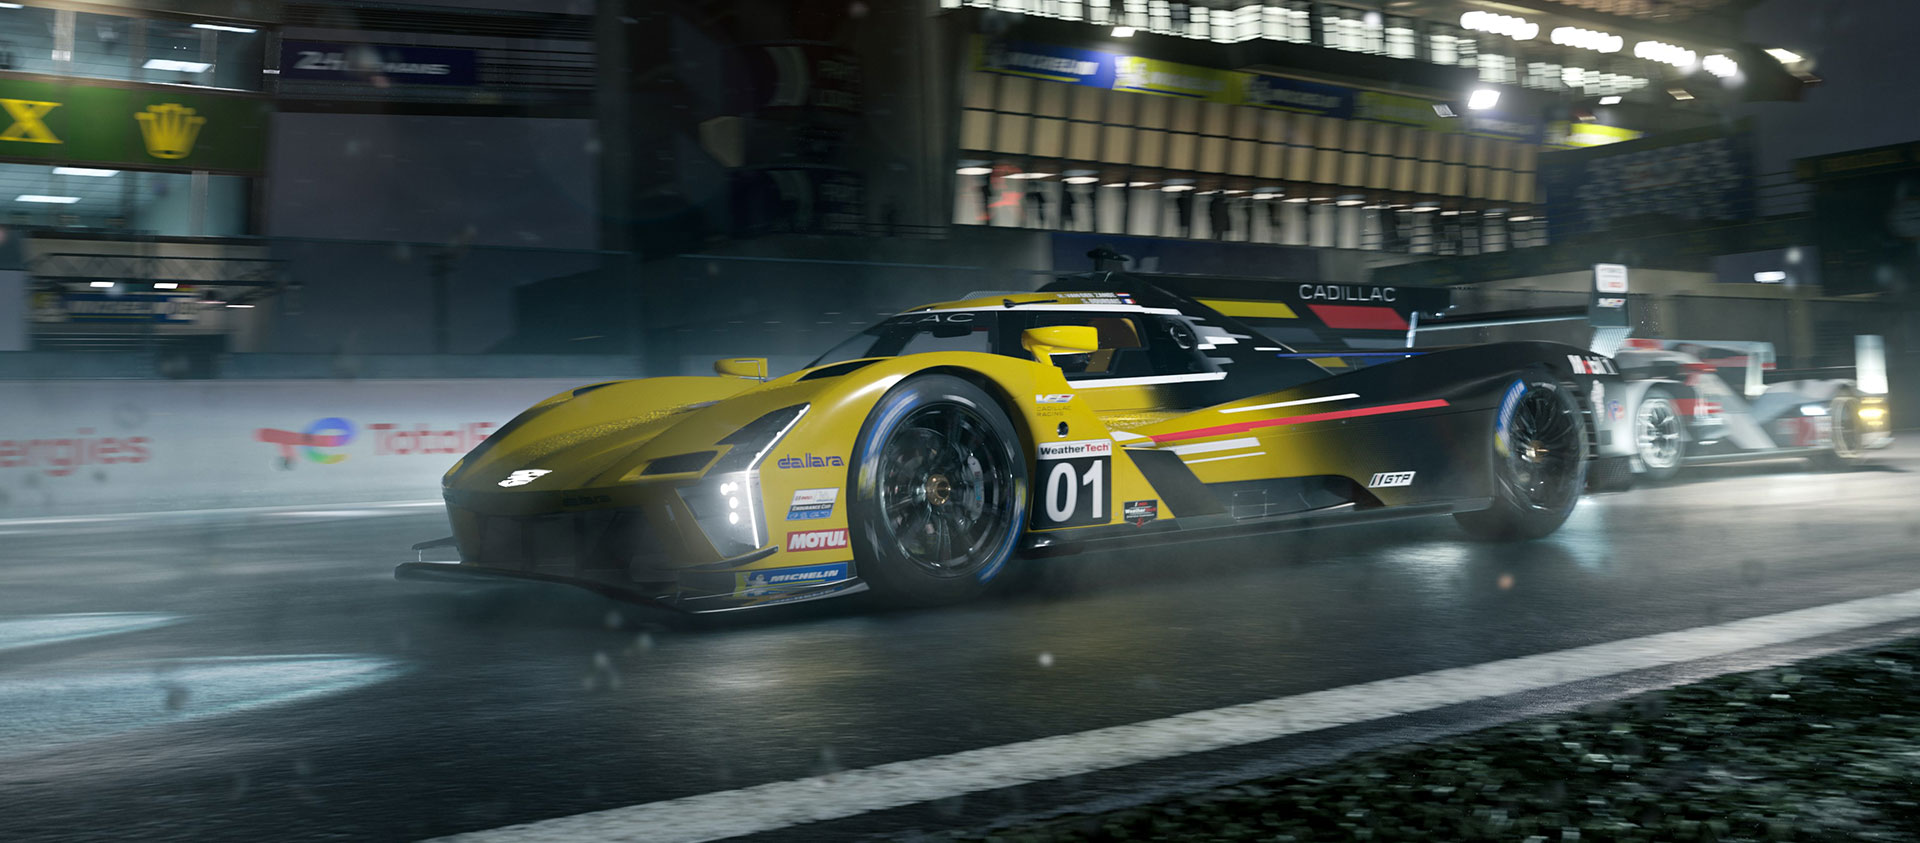 Forza Motorsport, żółty Cadillac V-Series.R mknie po torze w nocnej scenerii